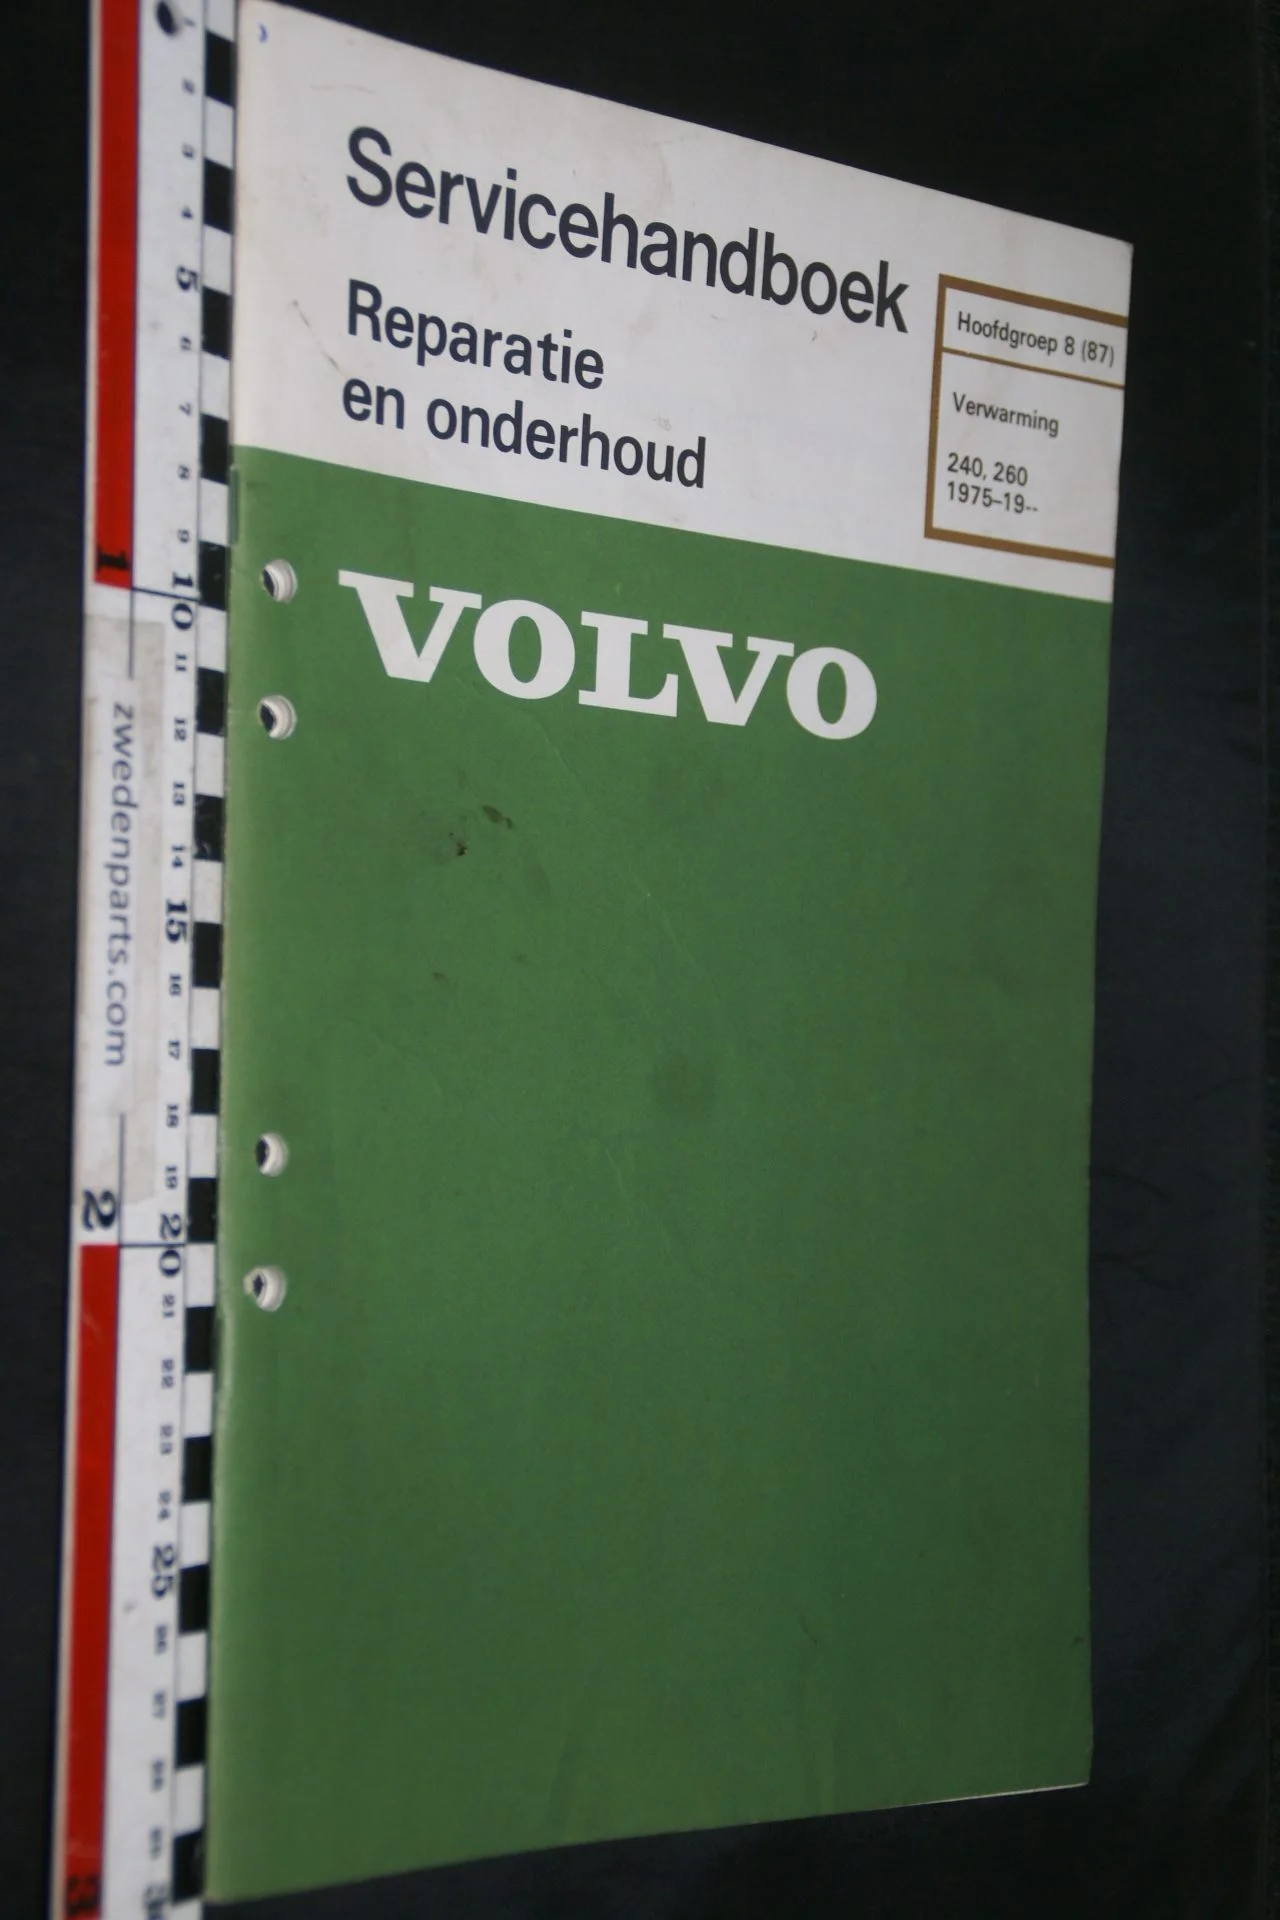 DSC06709 1981 origineel Volvo 240, 260 servicehandboek  8 (87) verwarming 1 van 800 TP 30286-1